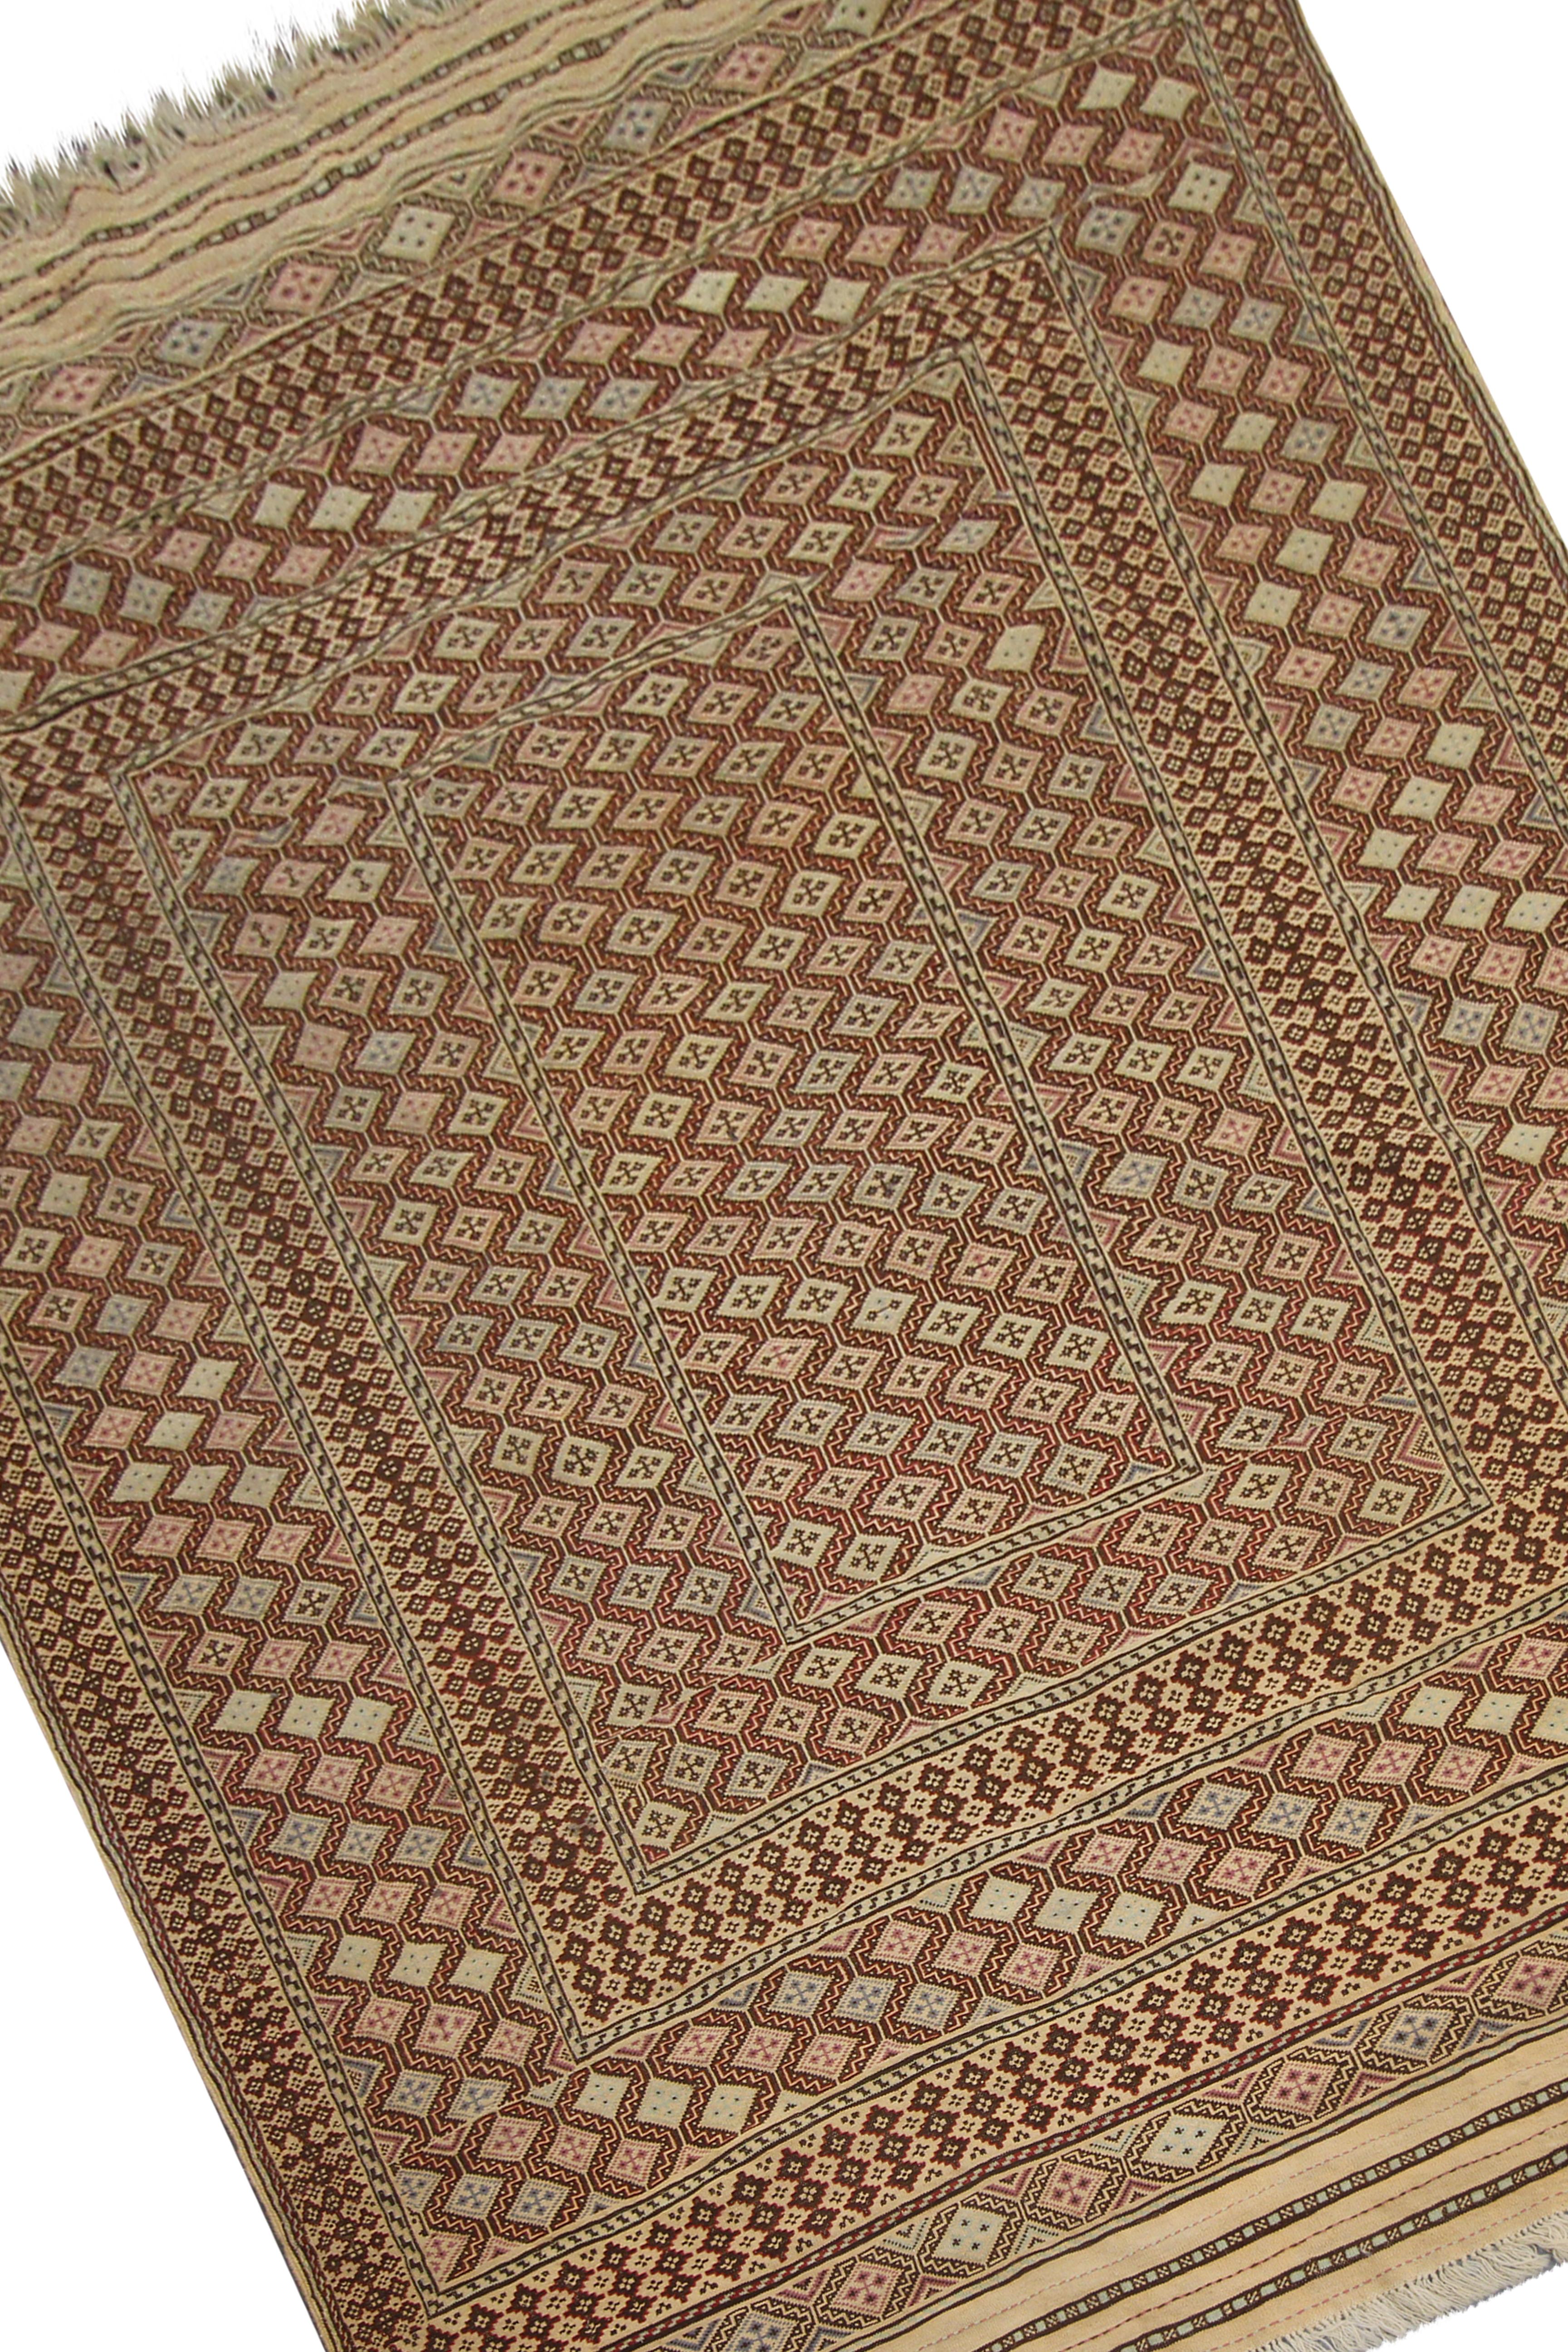 Tribal Ancien tapis brun Sumak tissé à la main, tissé à plat, Tapis oriental ancien en vente